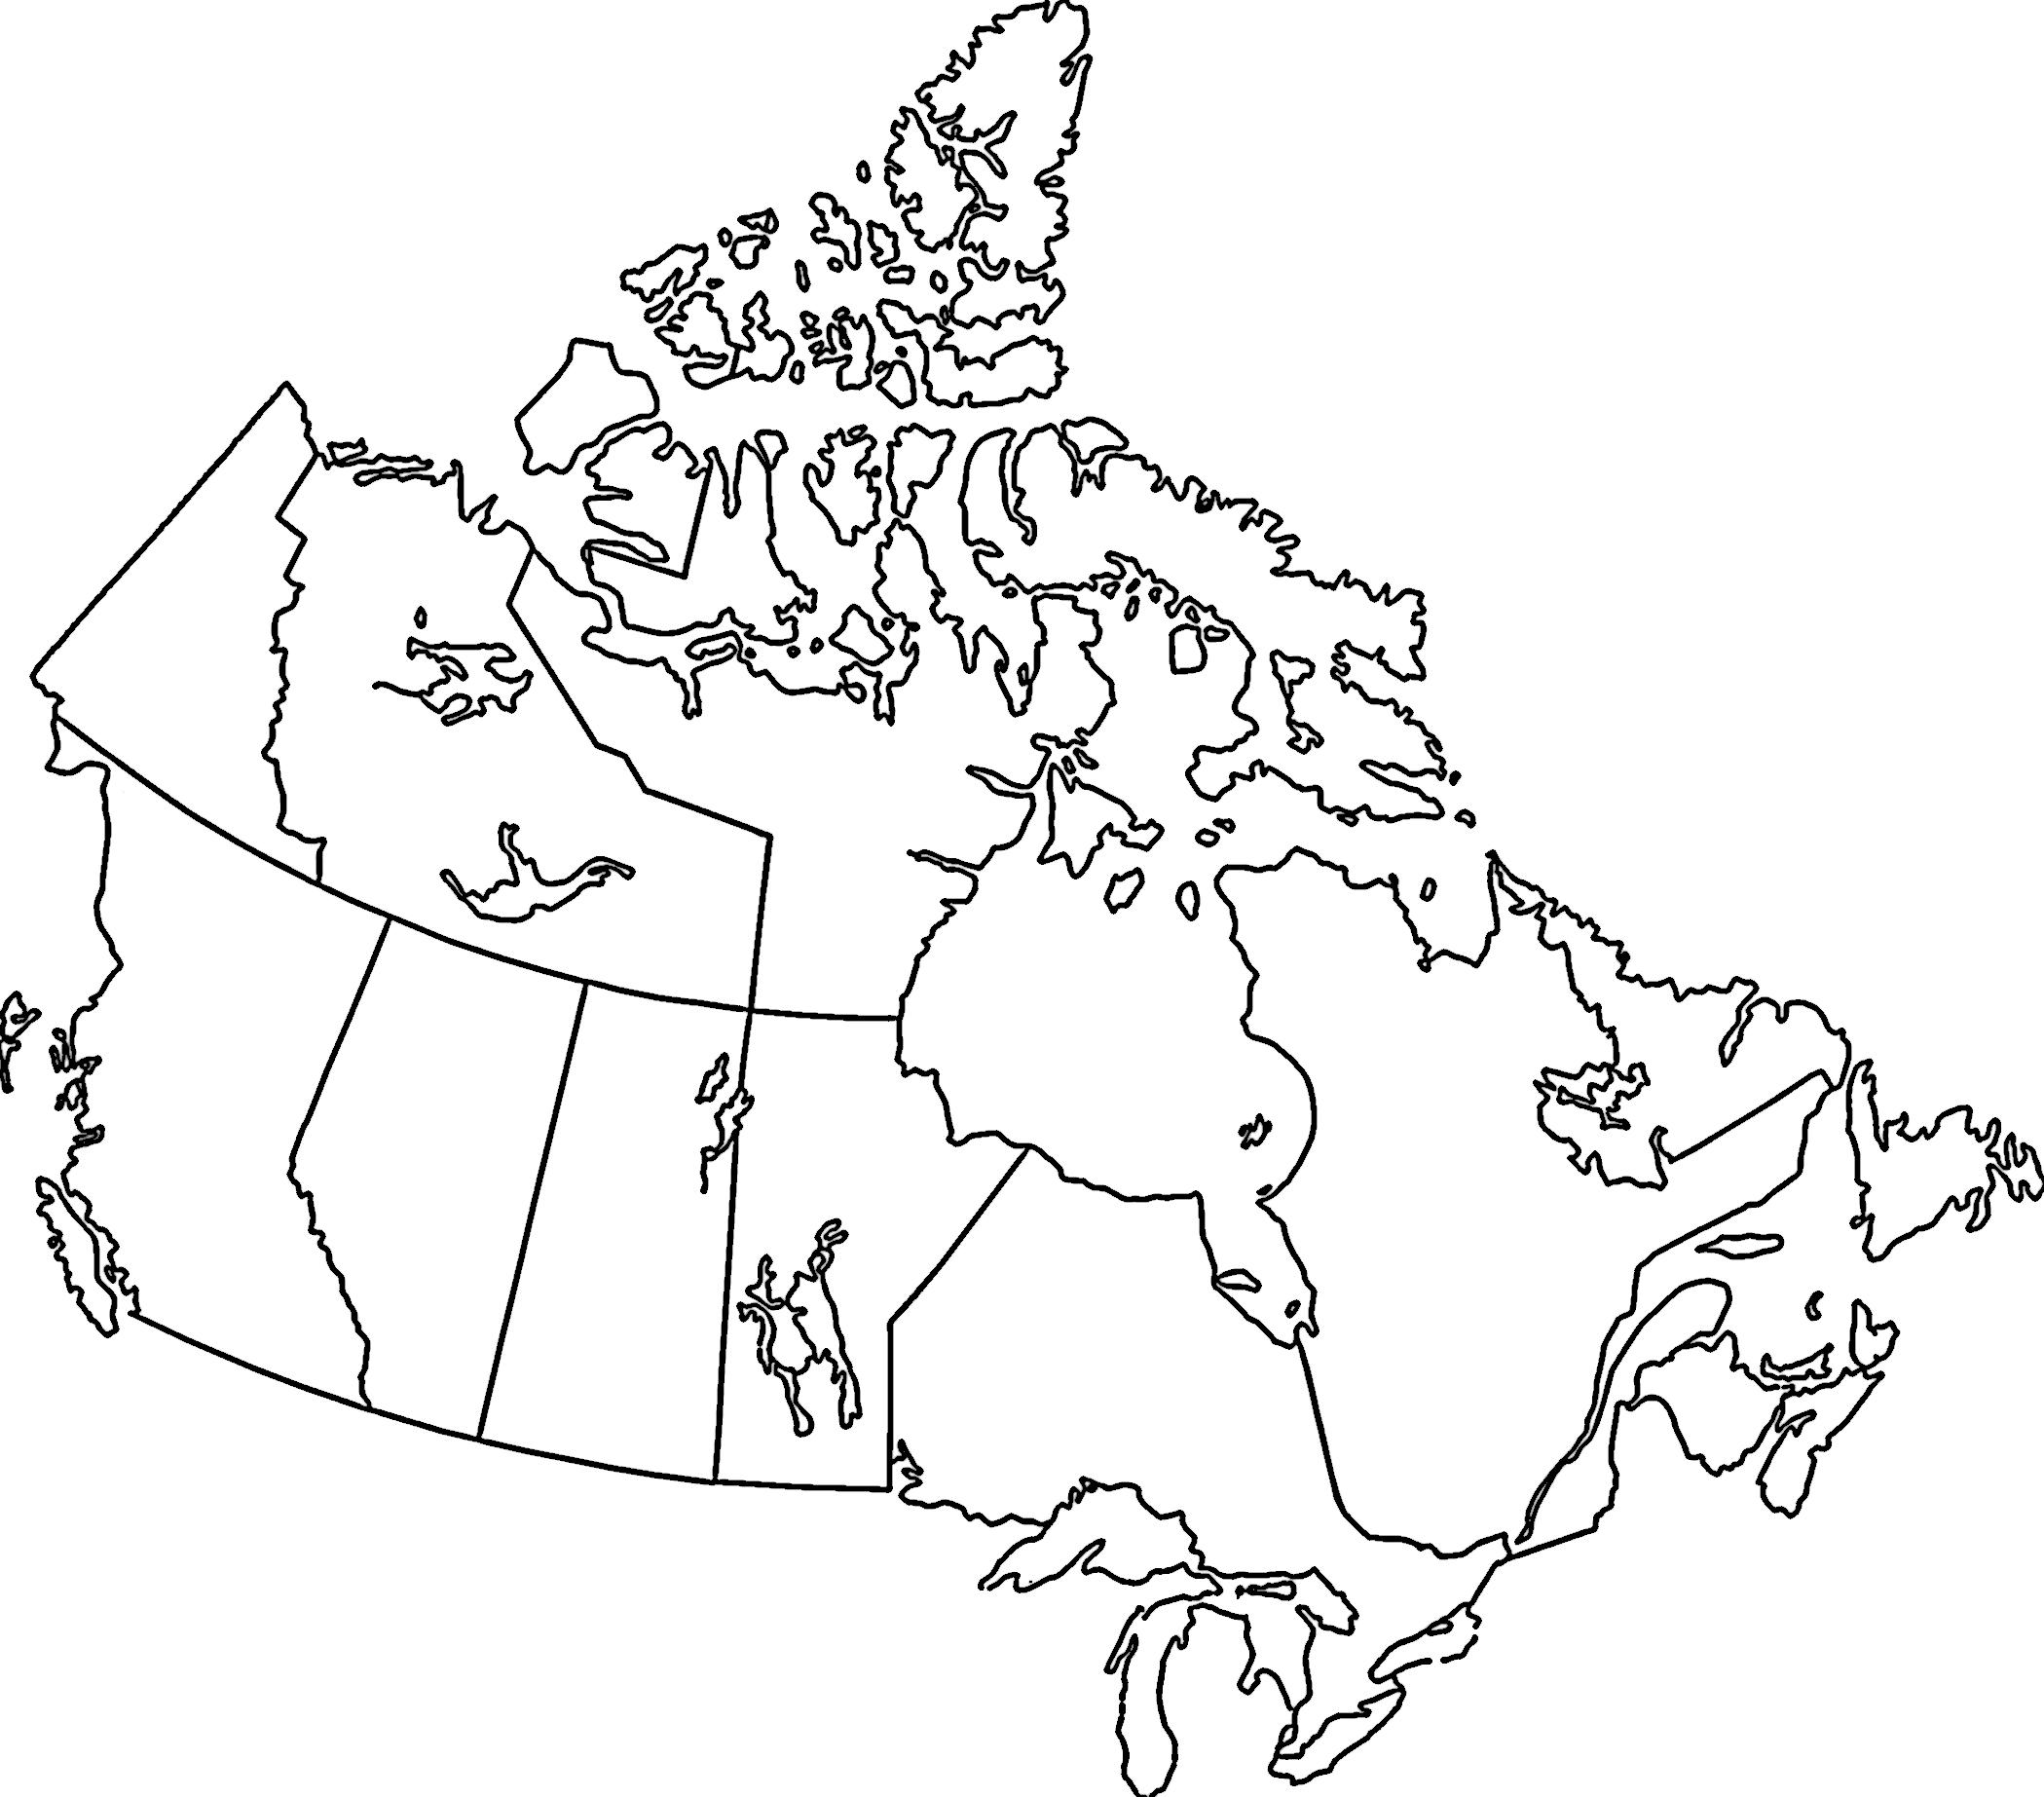 pusta-mapa-kanady-mapa-zarysu-i-mapa-wektorowa-kanady